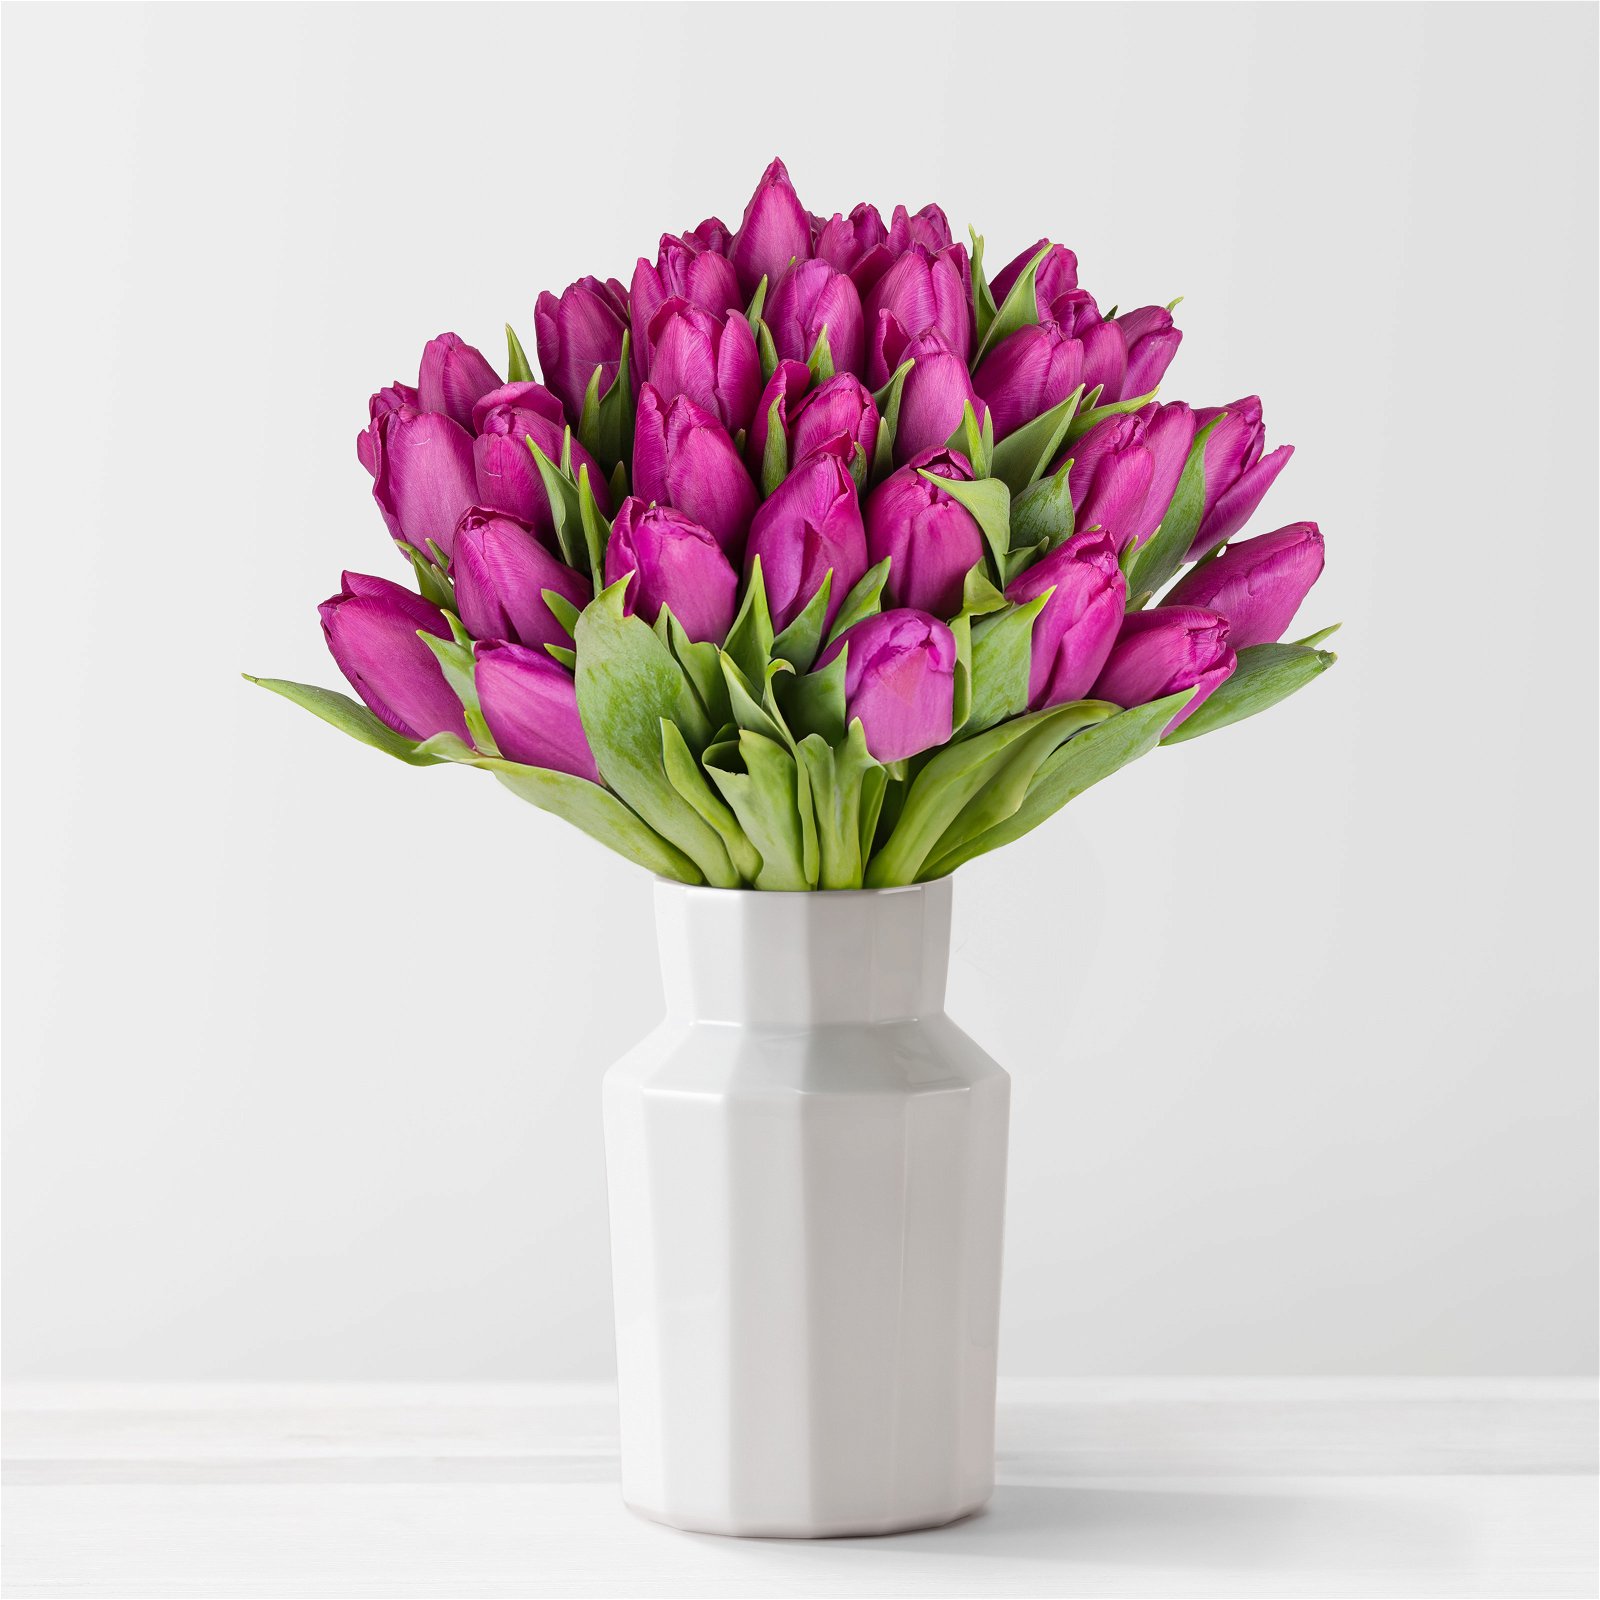 Blumenbund mit Tulpen, 30er-Bund, lila, inkl. gratis Grußkarte